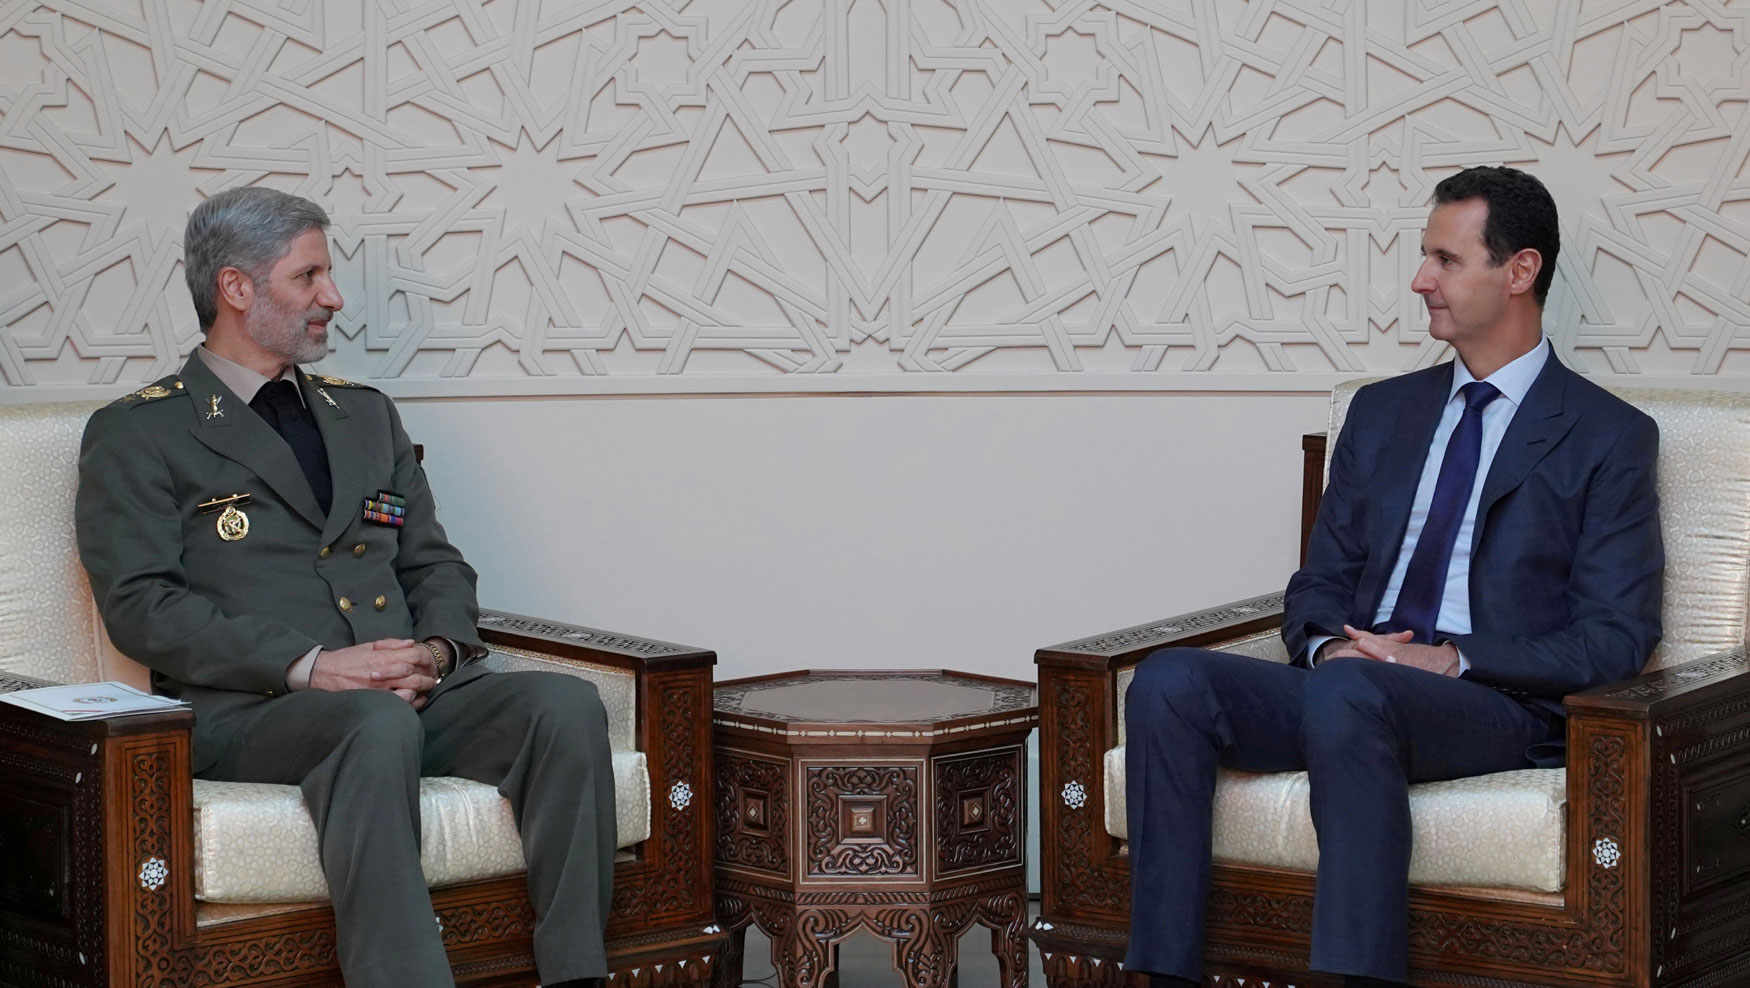 وزير الدفاع الإيراني أمير حاتمي زار الرئيس السوري بشار الاسد 